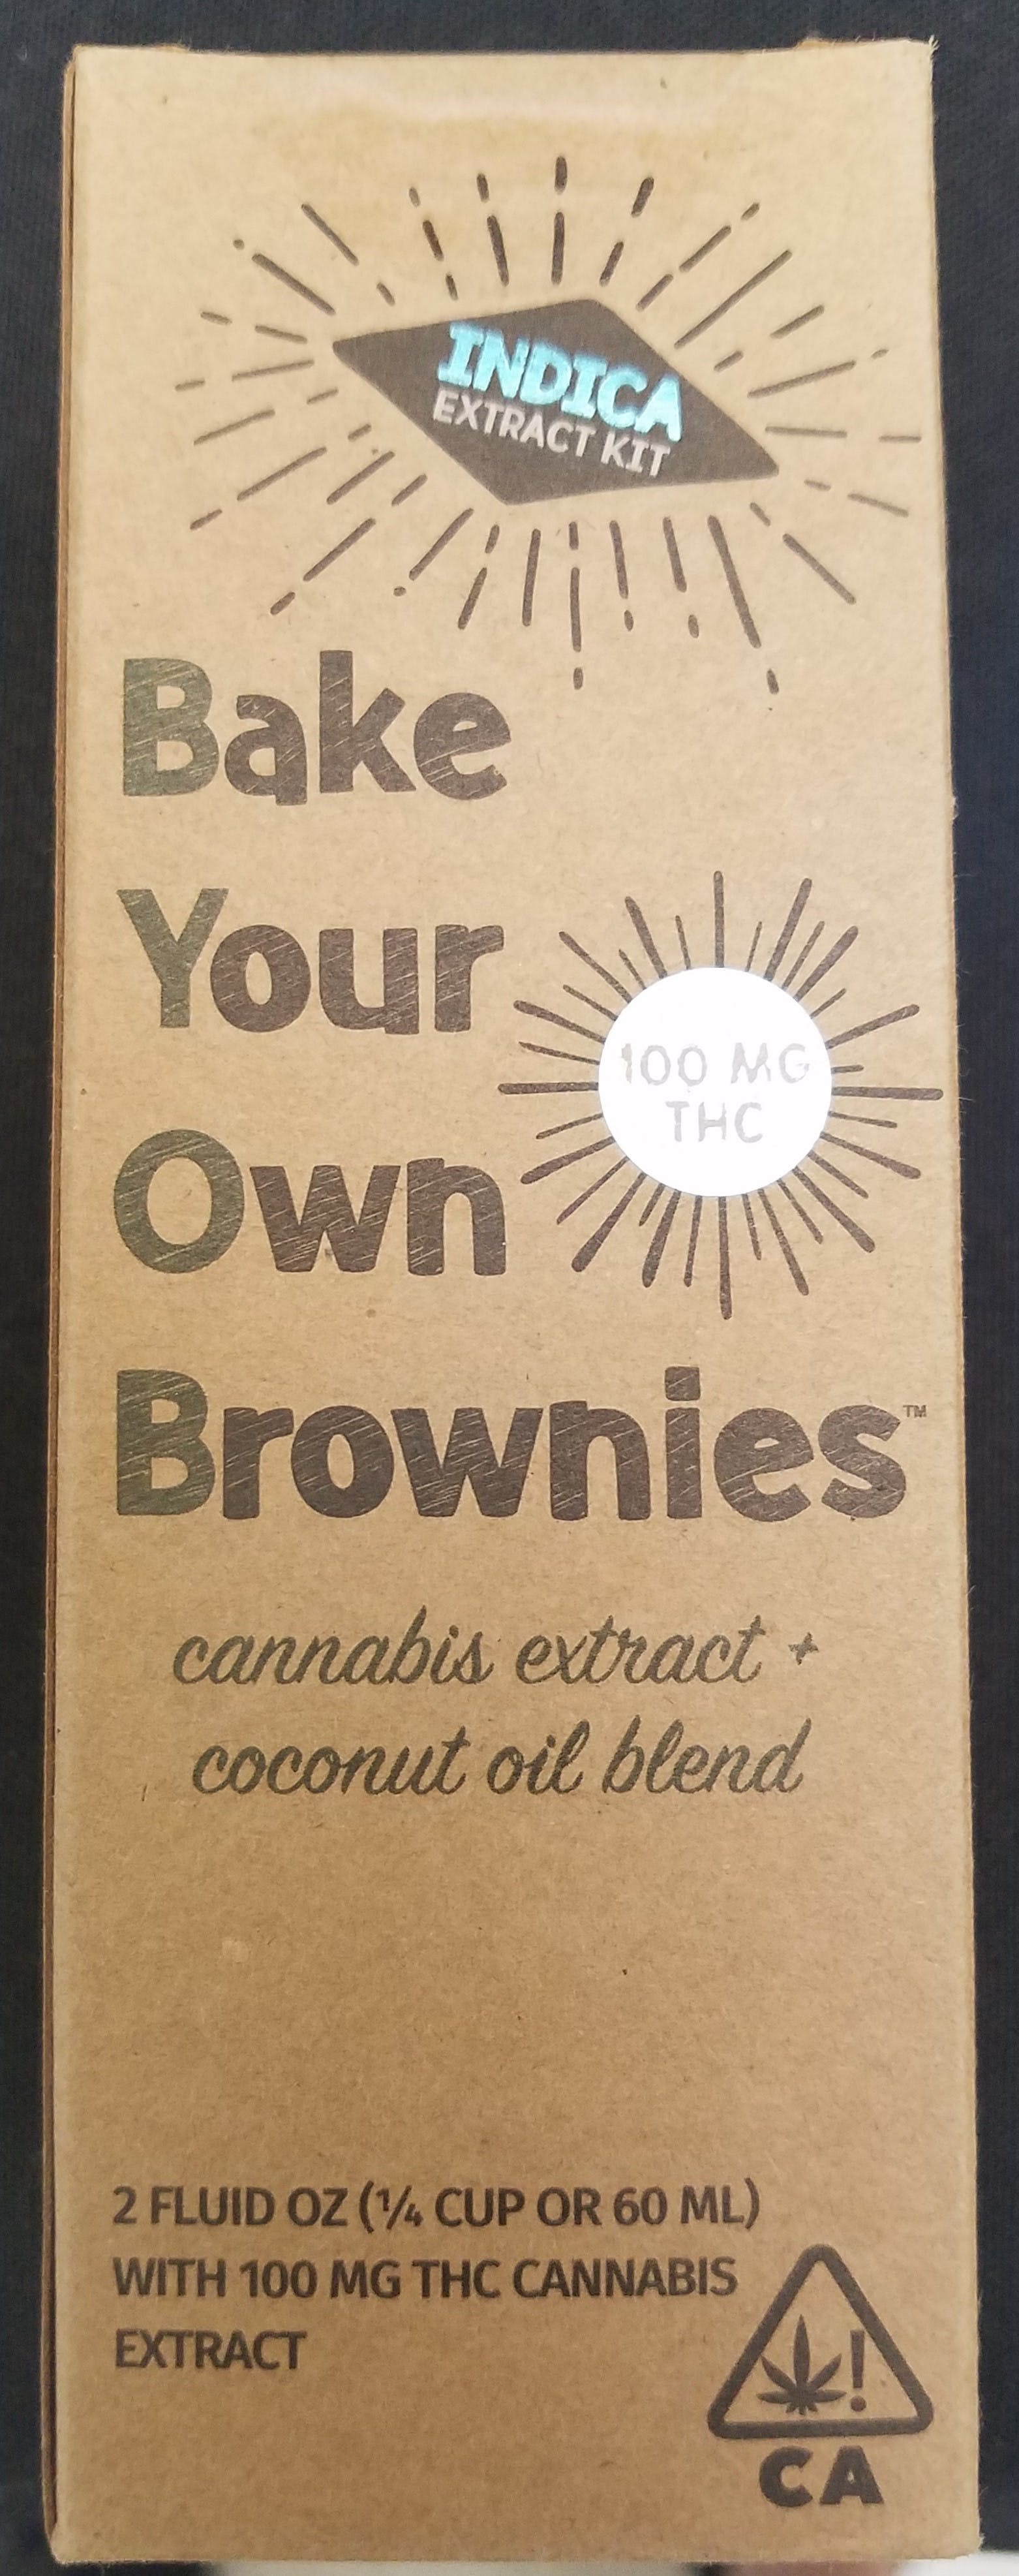 marijuana-dispensaries-mendocino-organics-in-vallejo-bake-your-own-brownies-indica-extract-kit